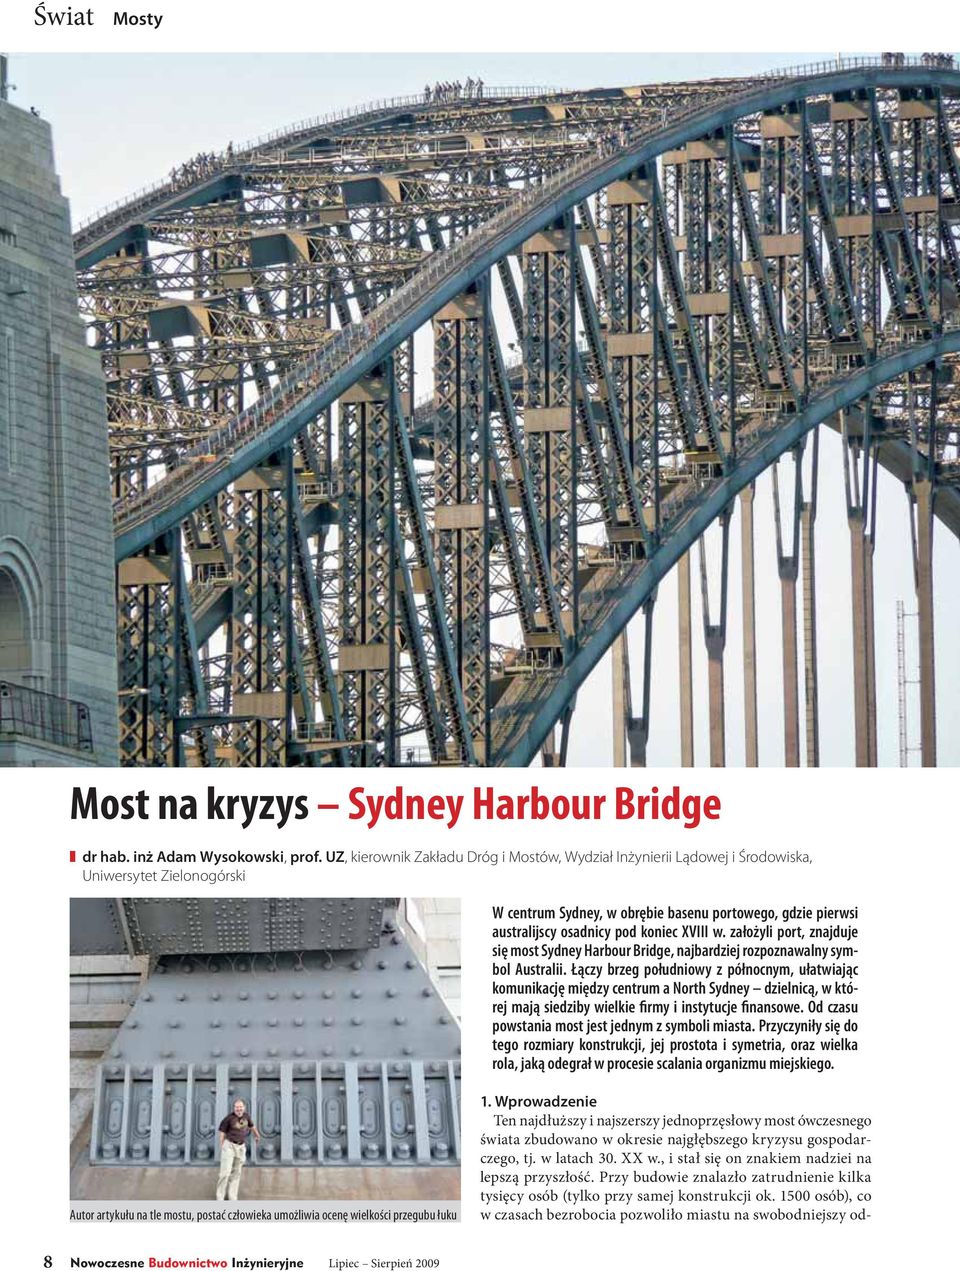 XVIII w. założyli port, znajduje się most Sydney Harbour Bridge, najbardziej rozpoznawalny symbol Australii.